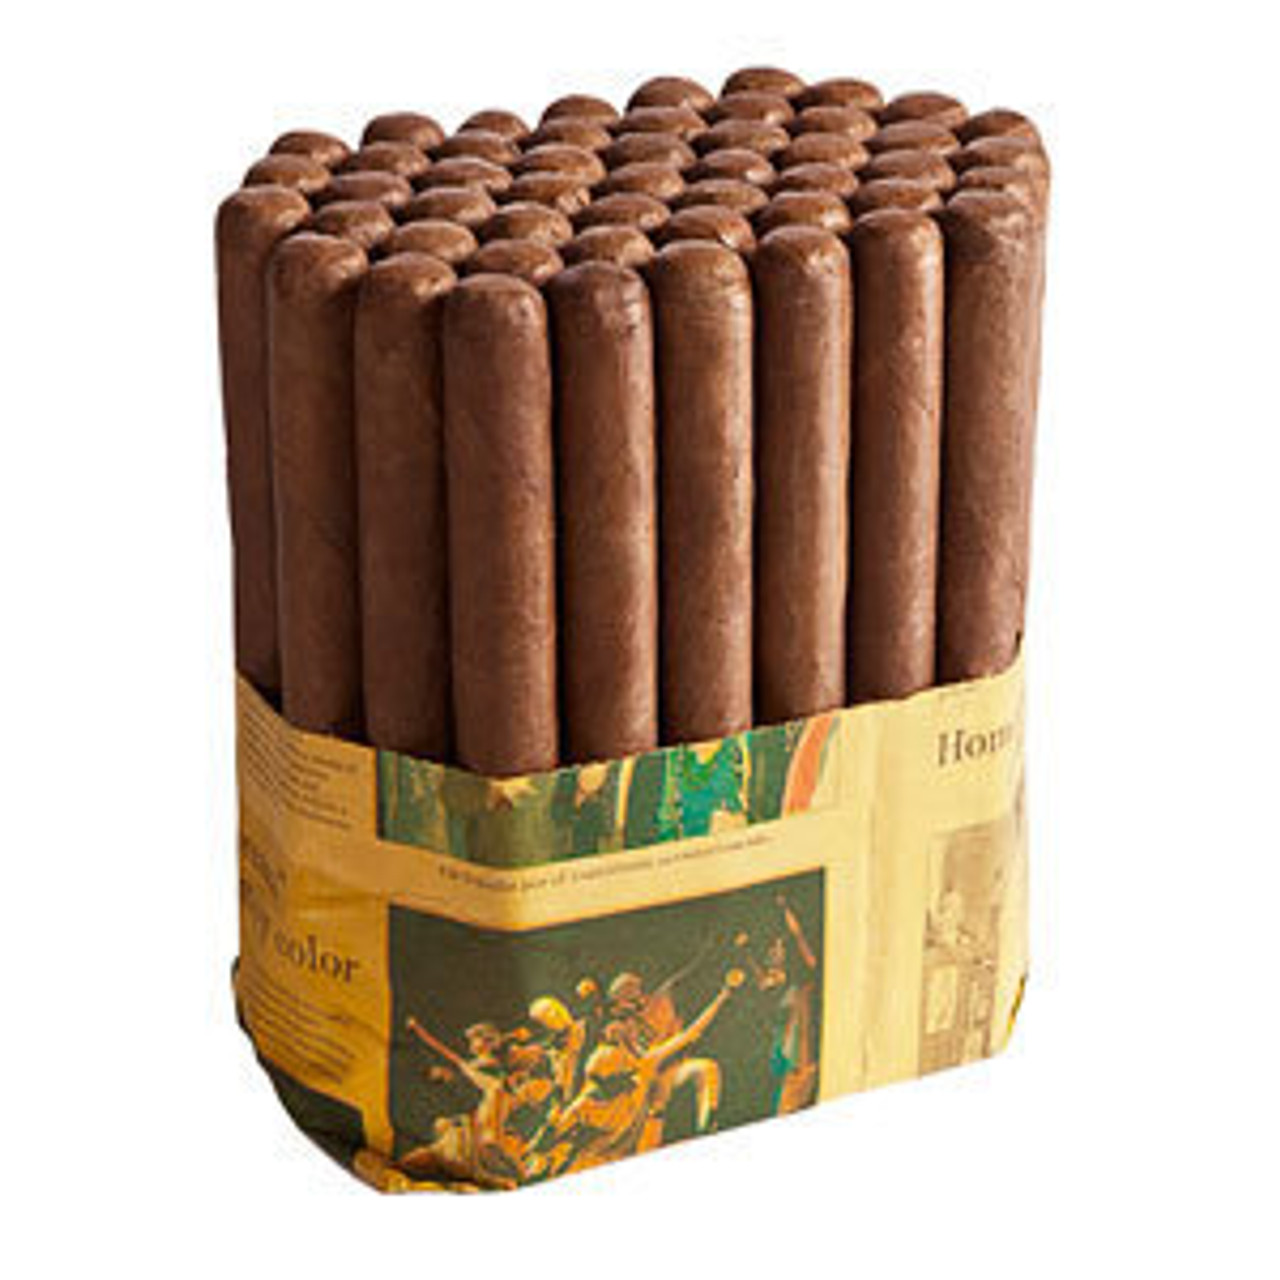 Honduran Factory Corojos Emperor Cigars - 8.5 x 50 (Bundle of 50) *Box